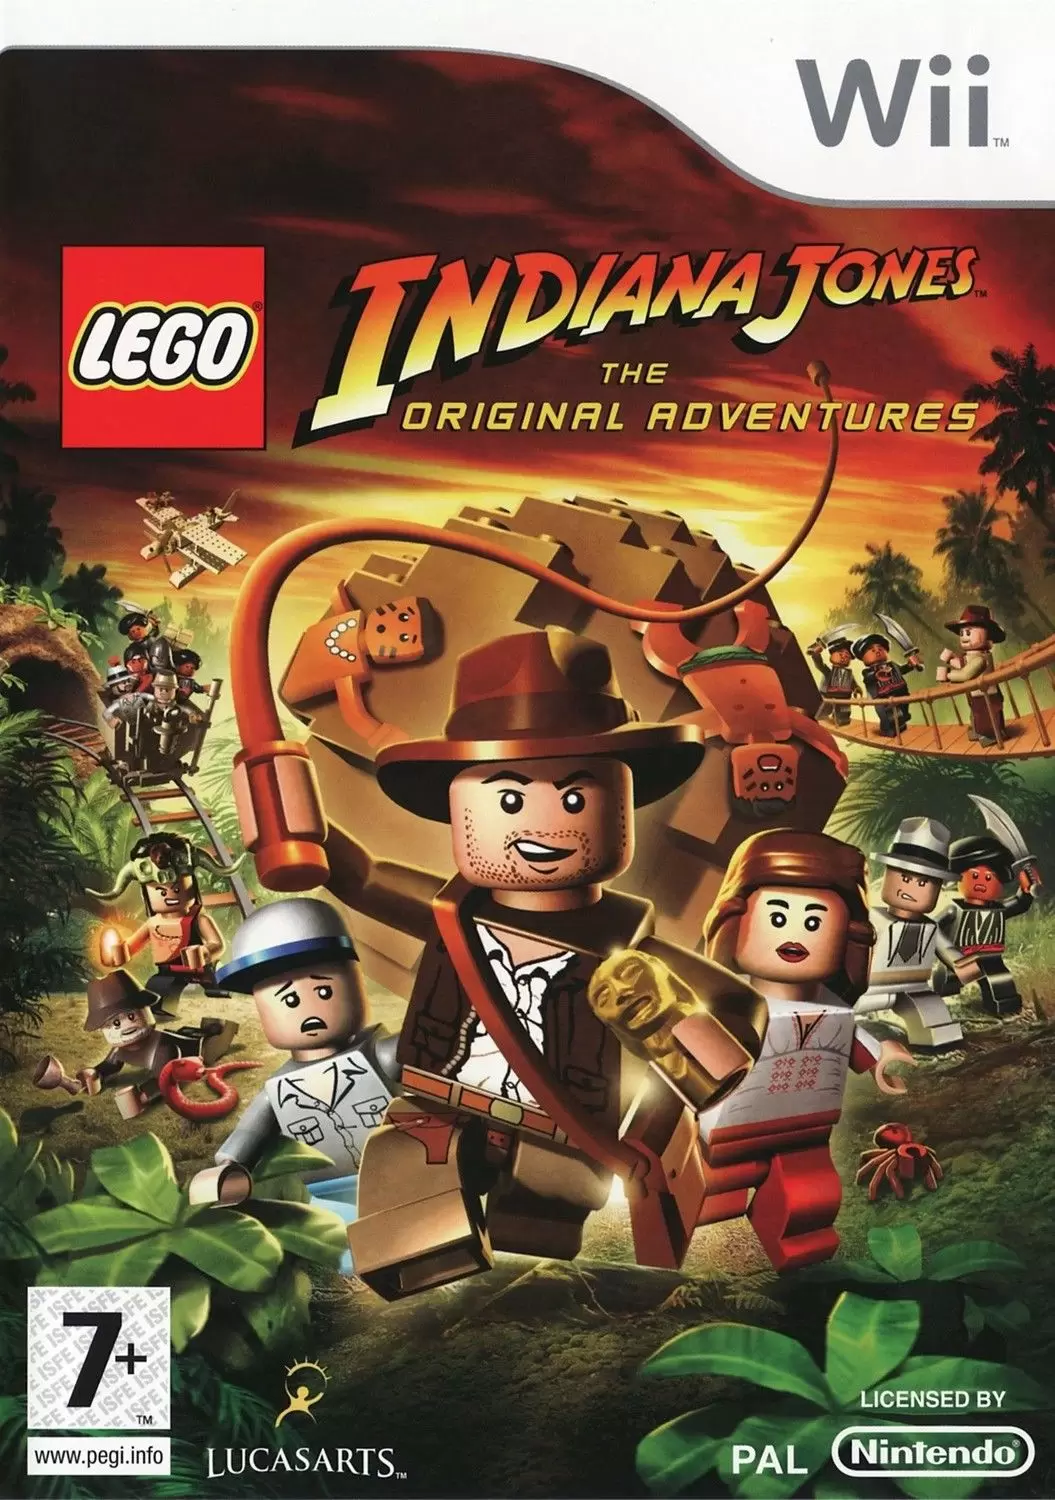 Nintendo Wii Games - Lego Indiana Jones: The Original Adventures